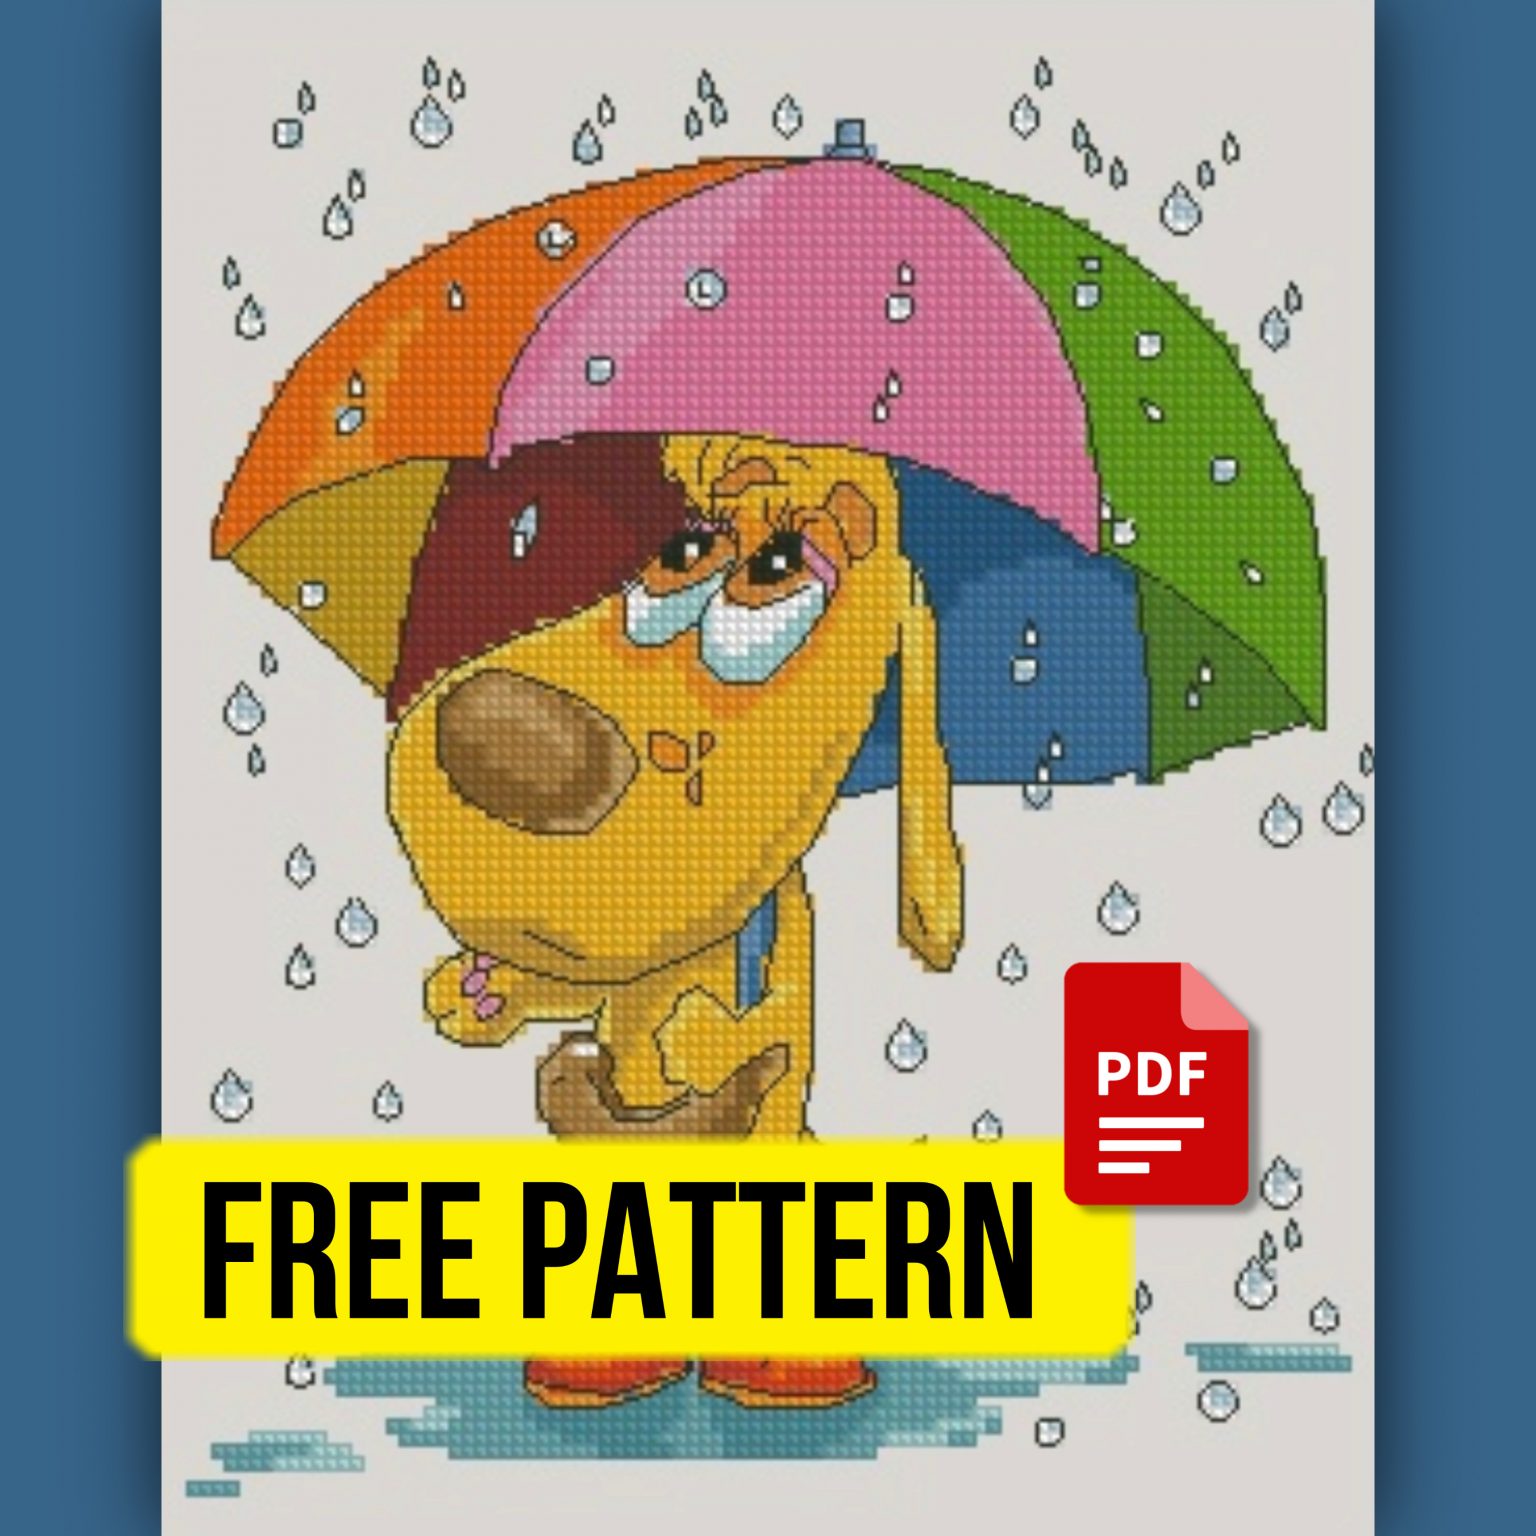 rainy-day-free-cross-stitch-pattern-pdf-download-dog